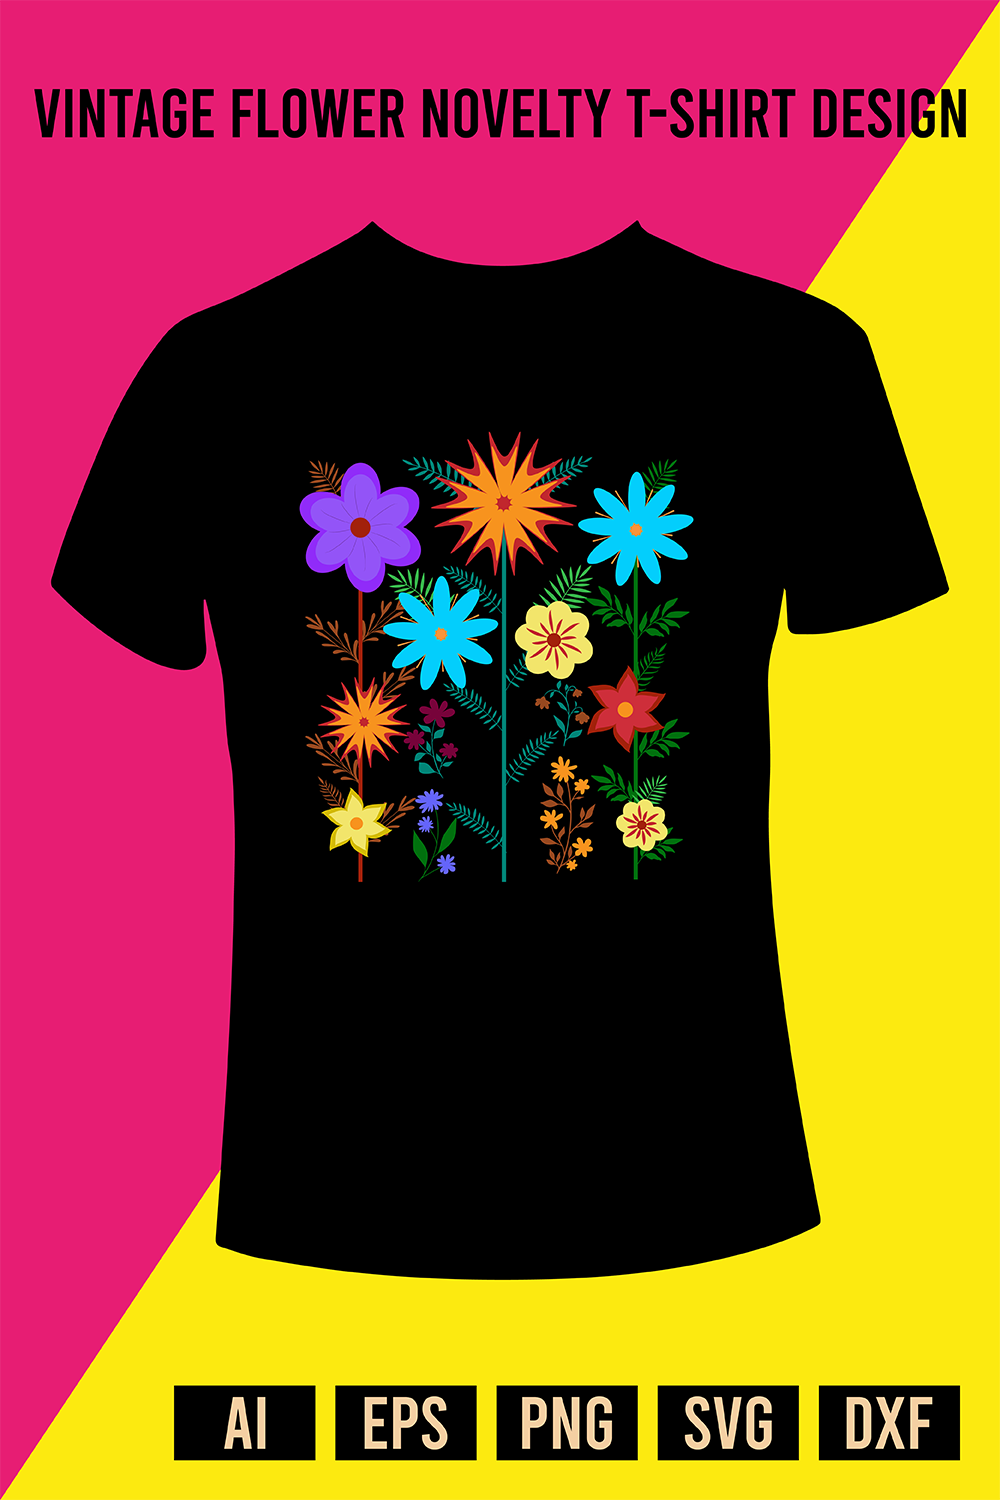 Vintage Flower Novelty T-Shirt Design pinterest preview image.